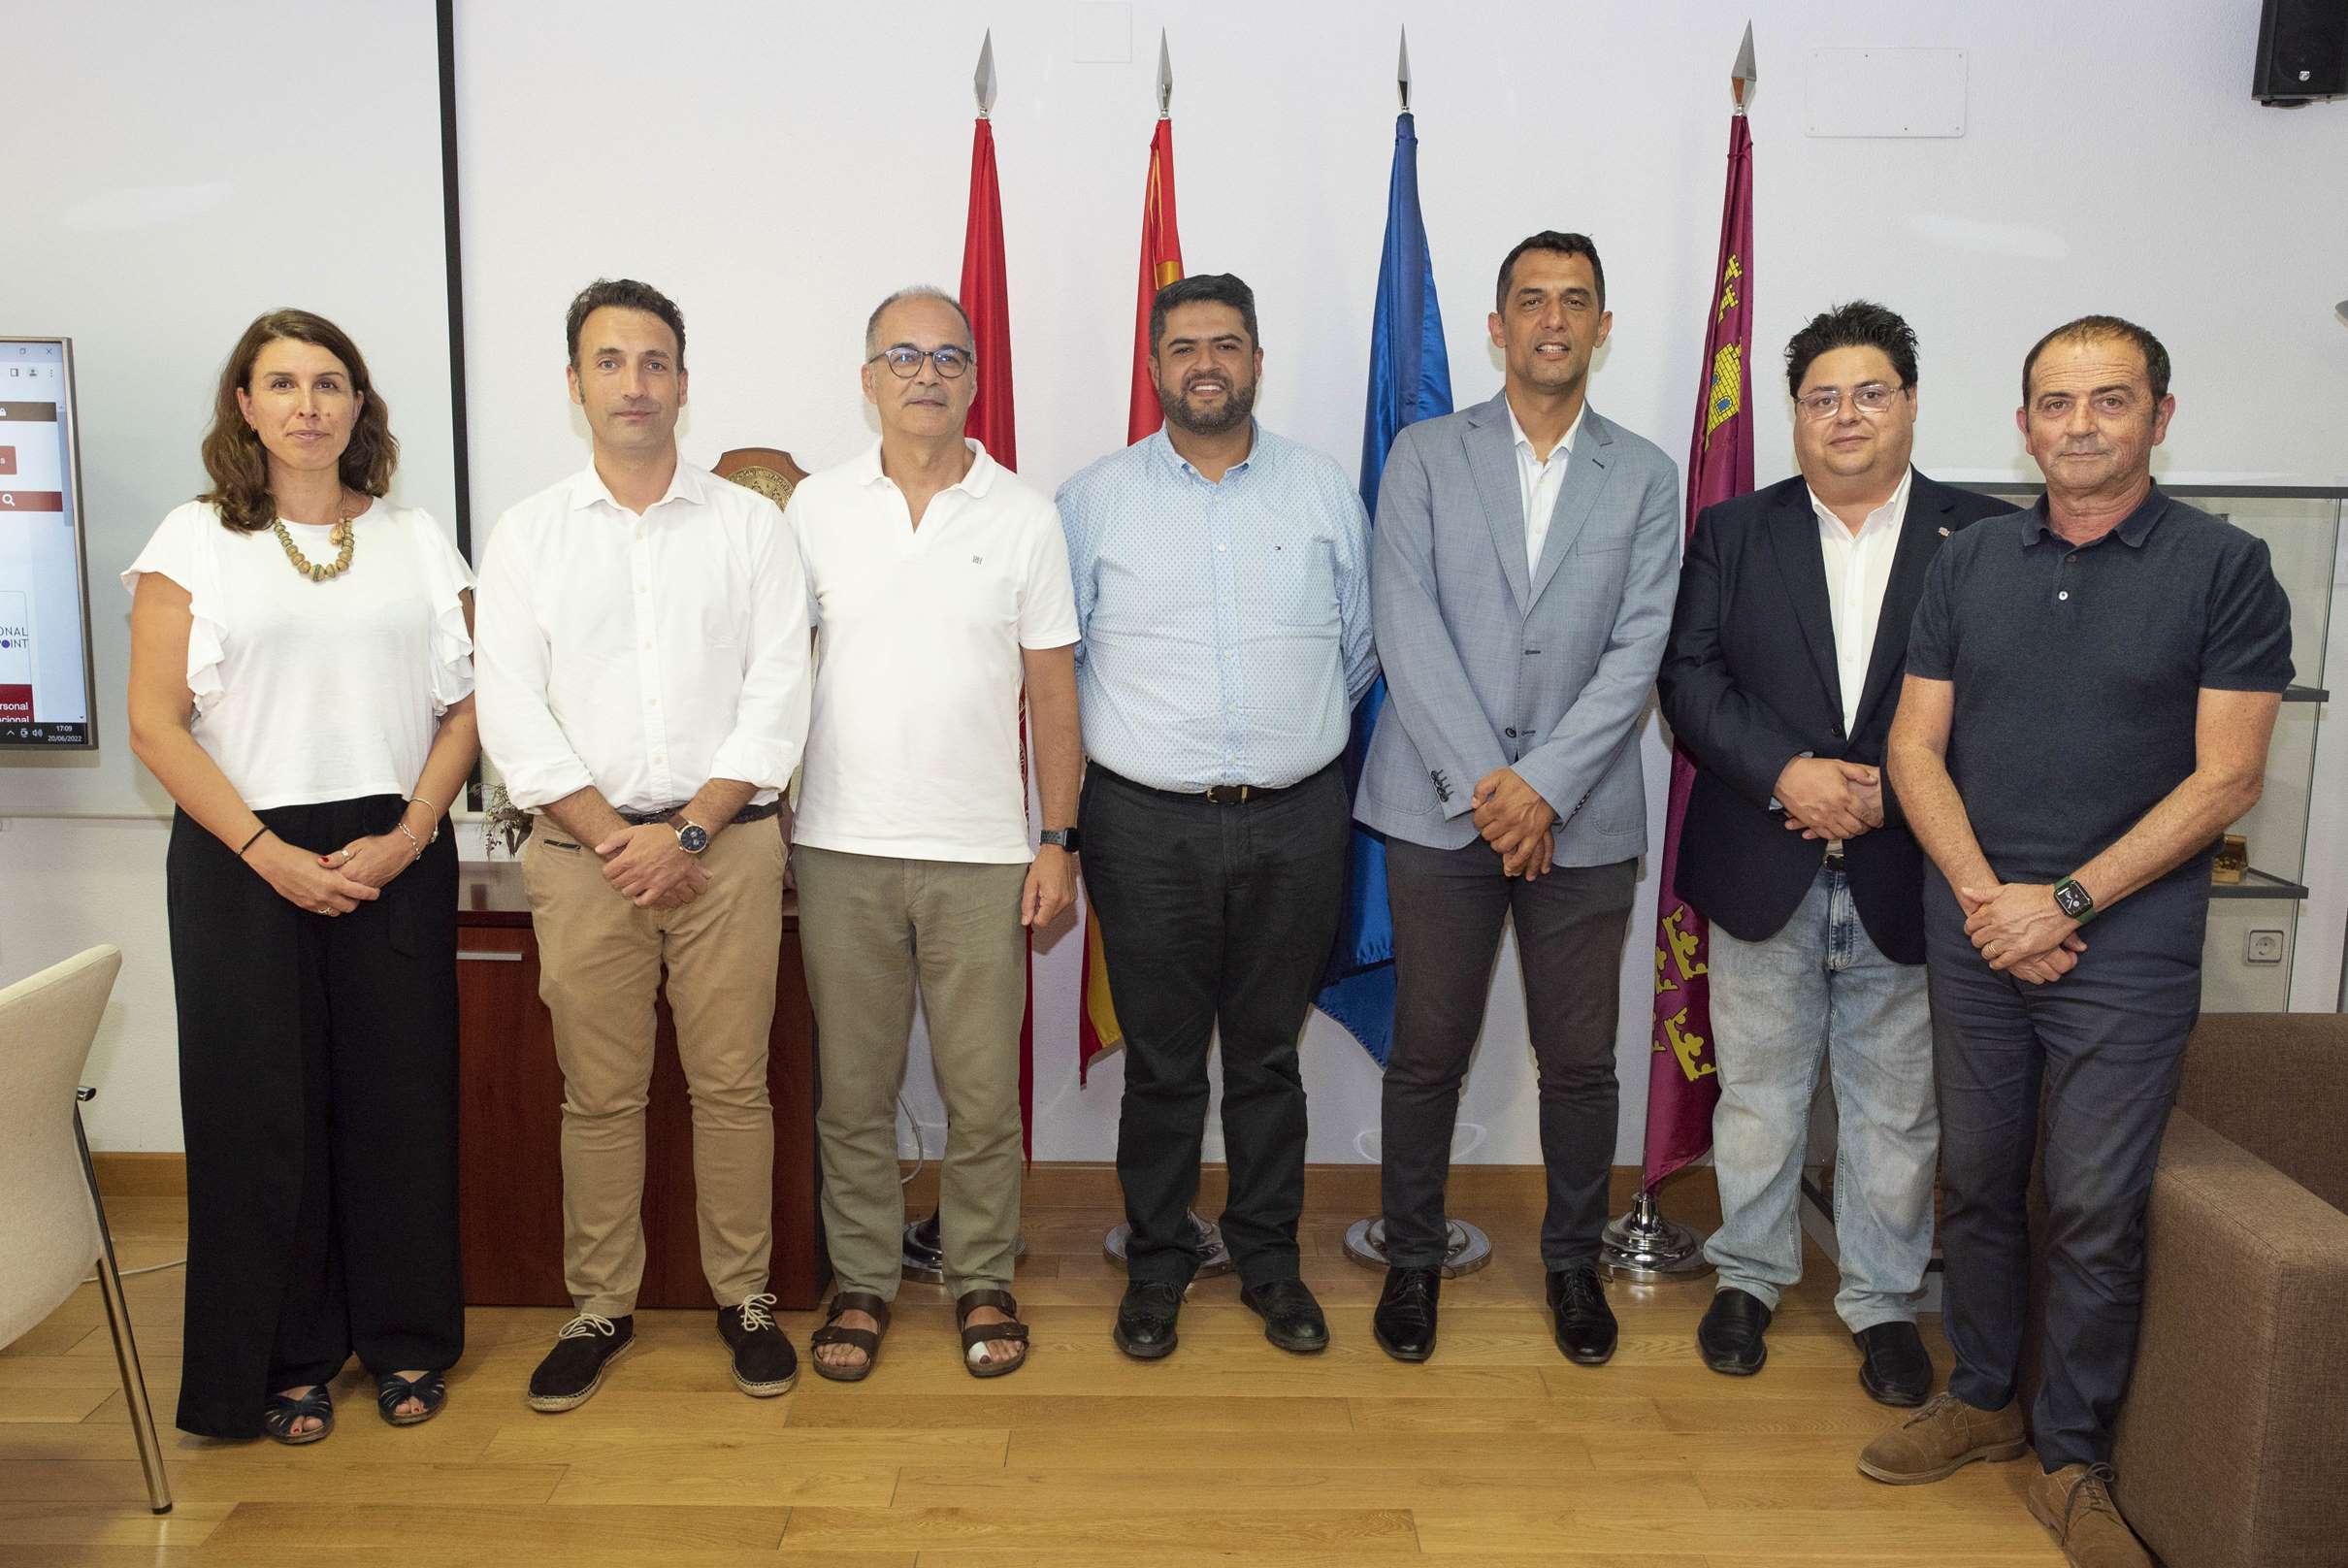 La Universidad de Murcia recibe la visita del rector de la Universidad de Santo Tomás - Sede Medellín (Colombia)